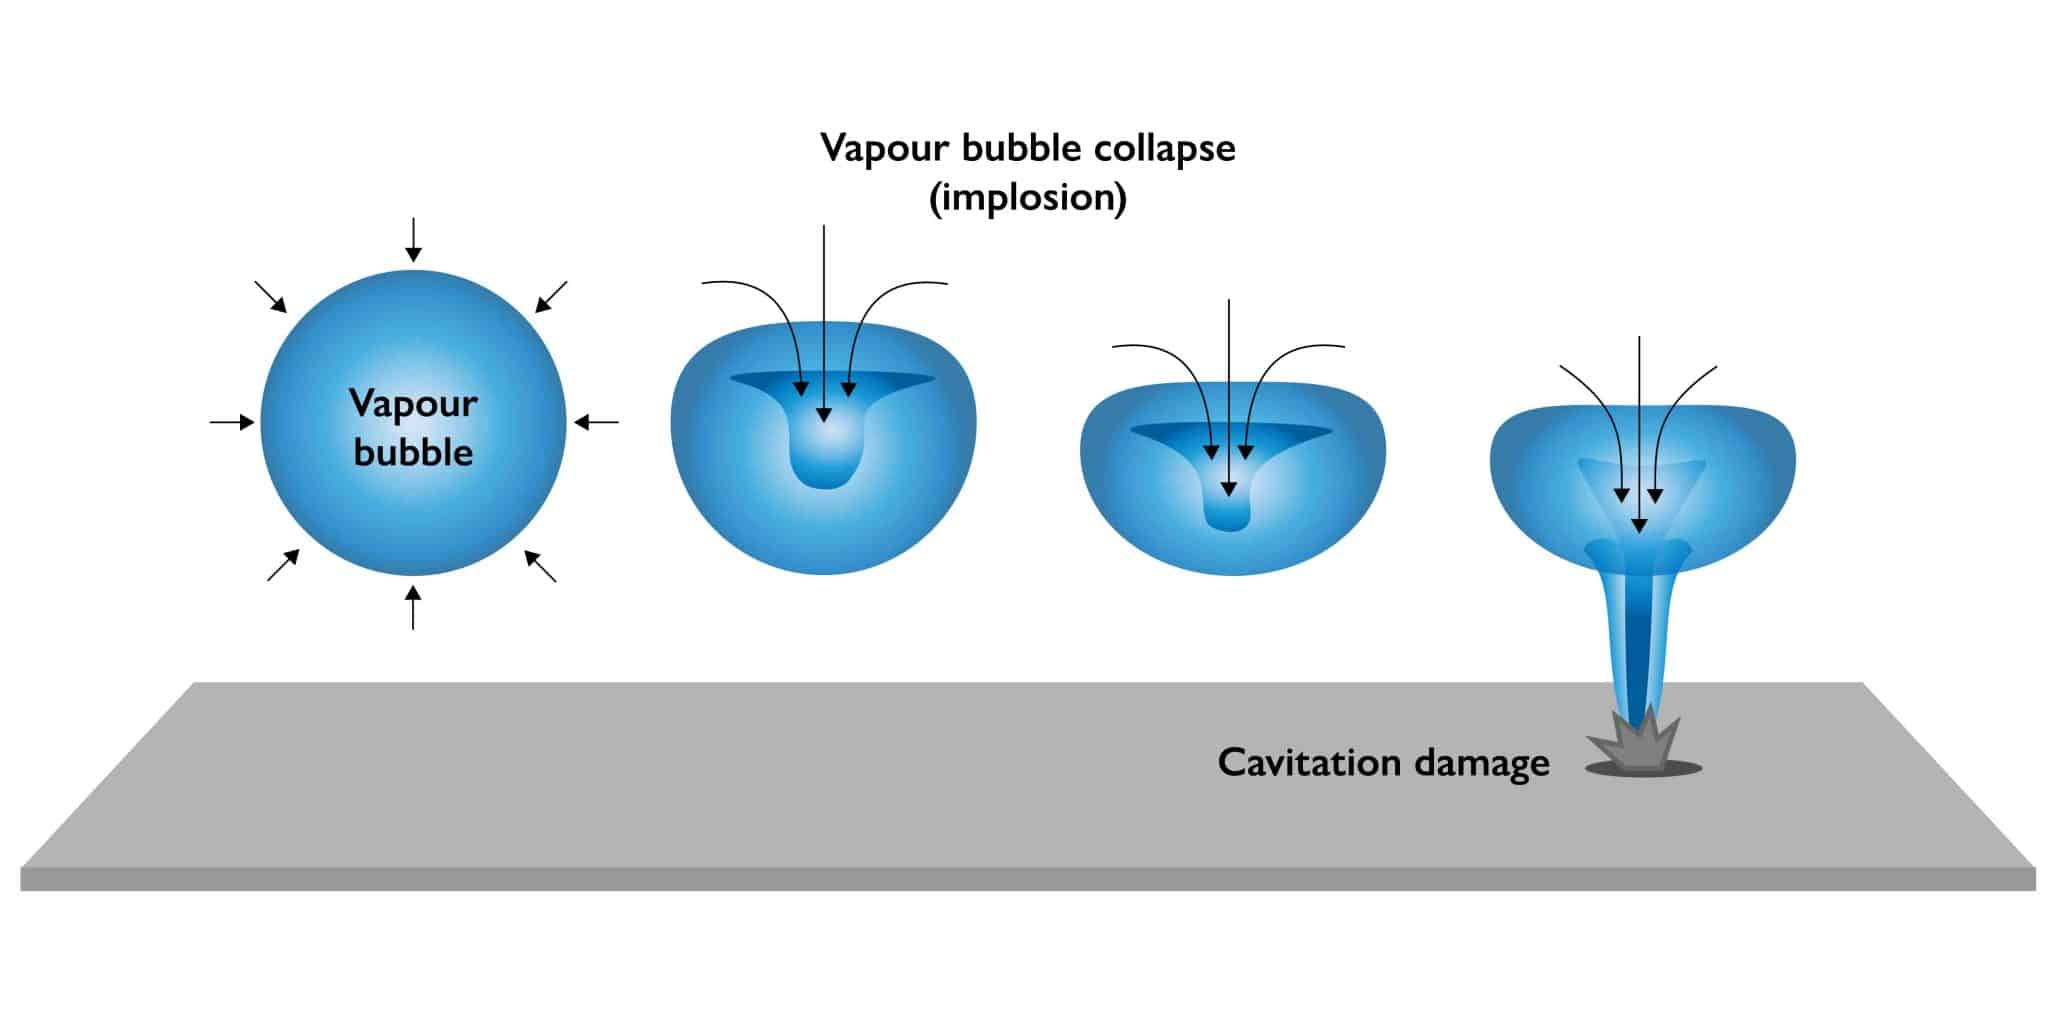 Vapour bubble collapse in pump cavitation